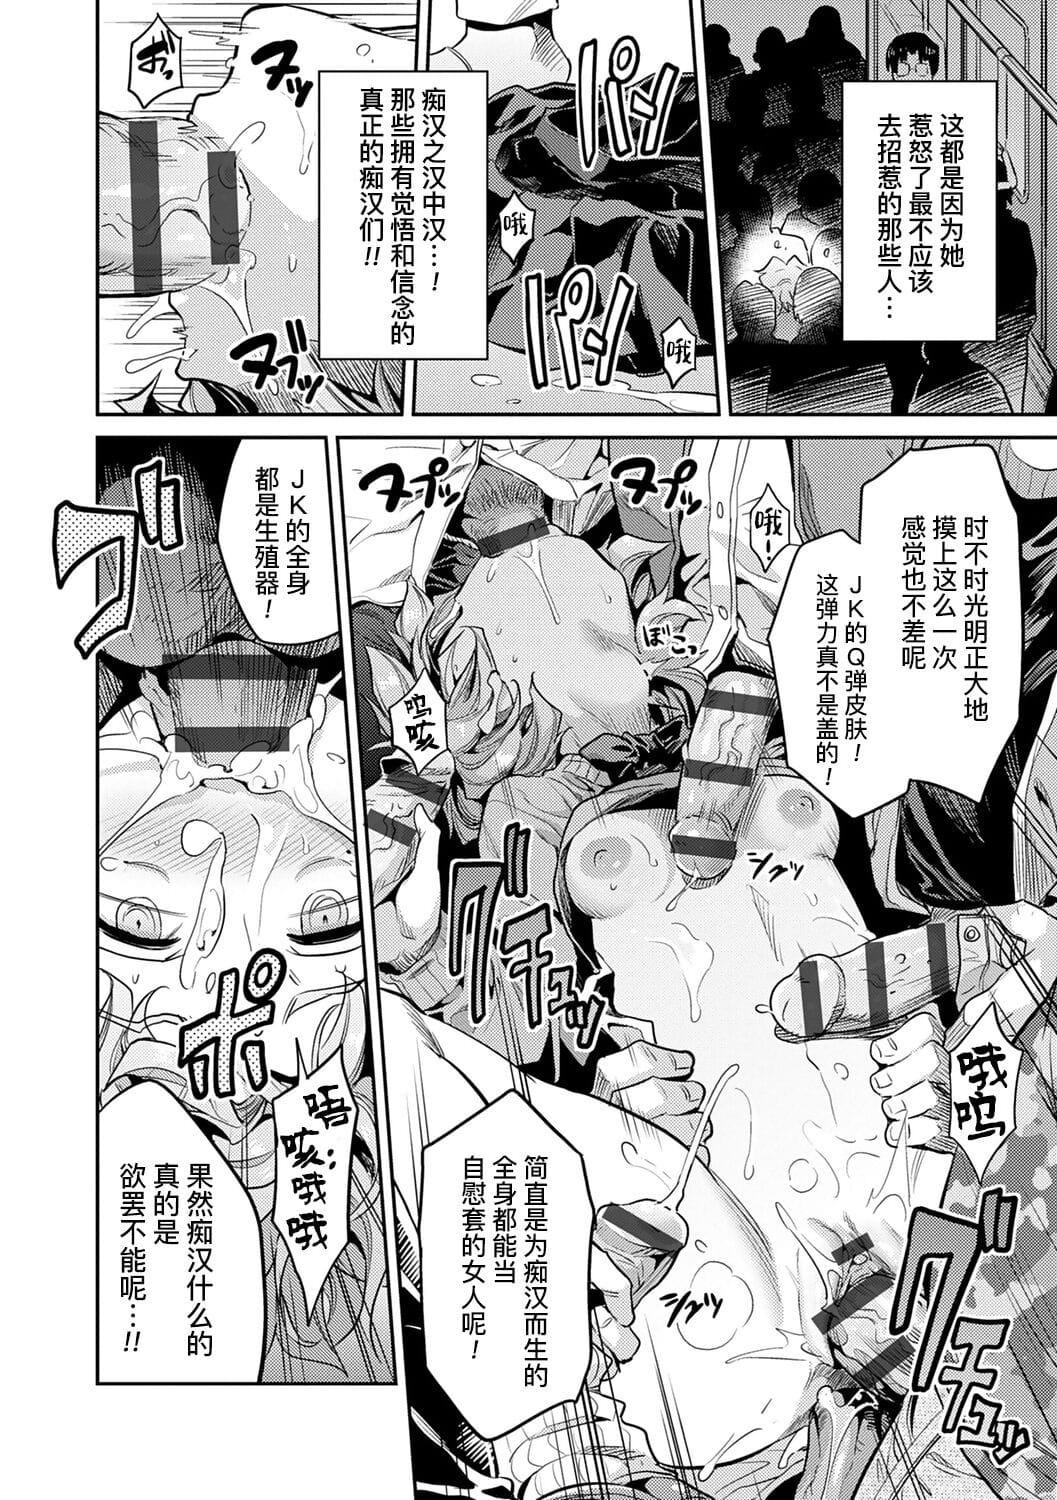 Ingaouhou?JK Chikanreipu + Sonoato - ?????JK???? + ?? page 1